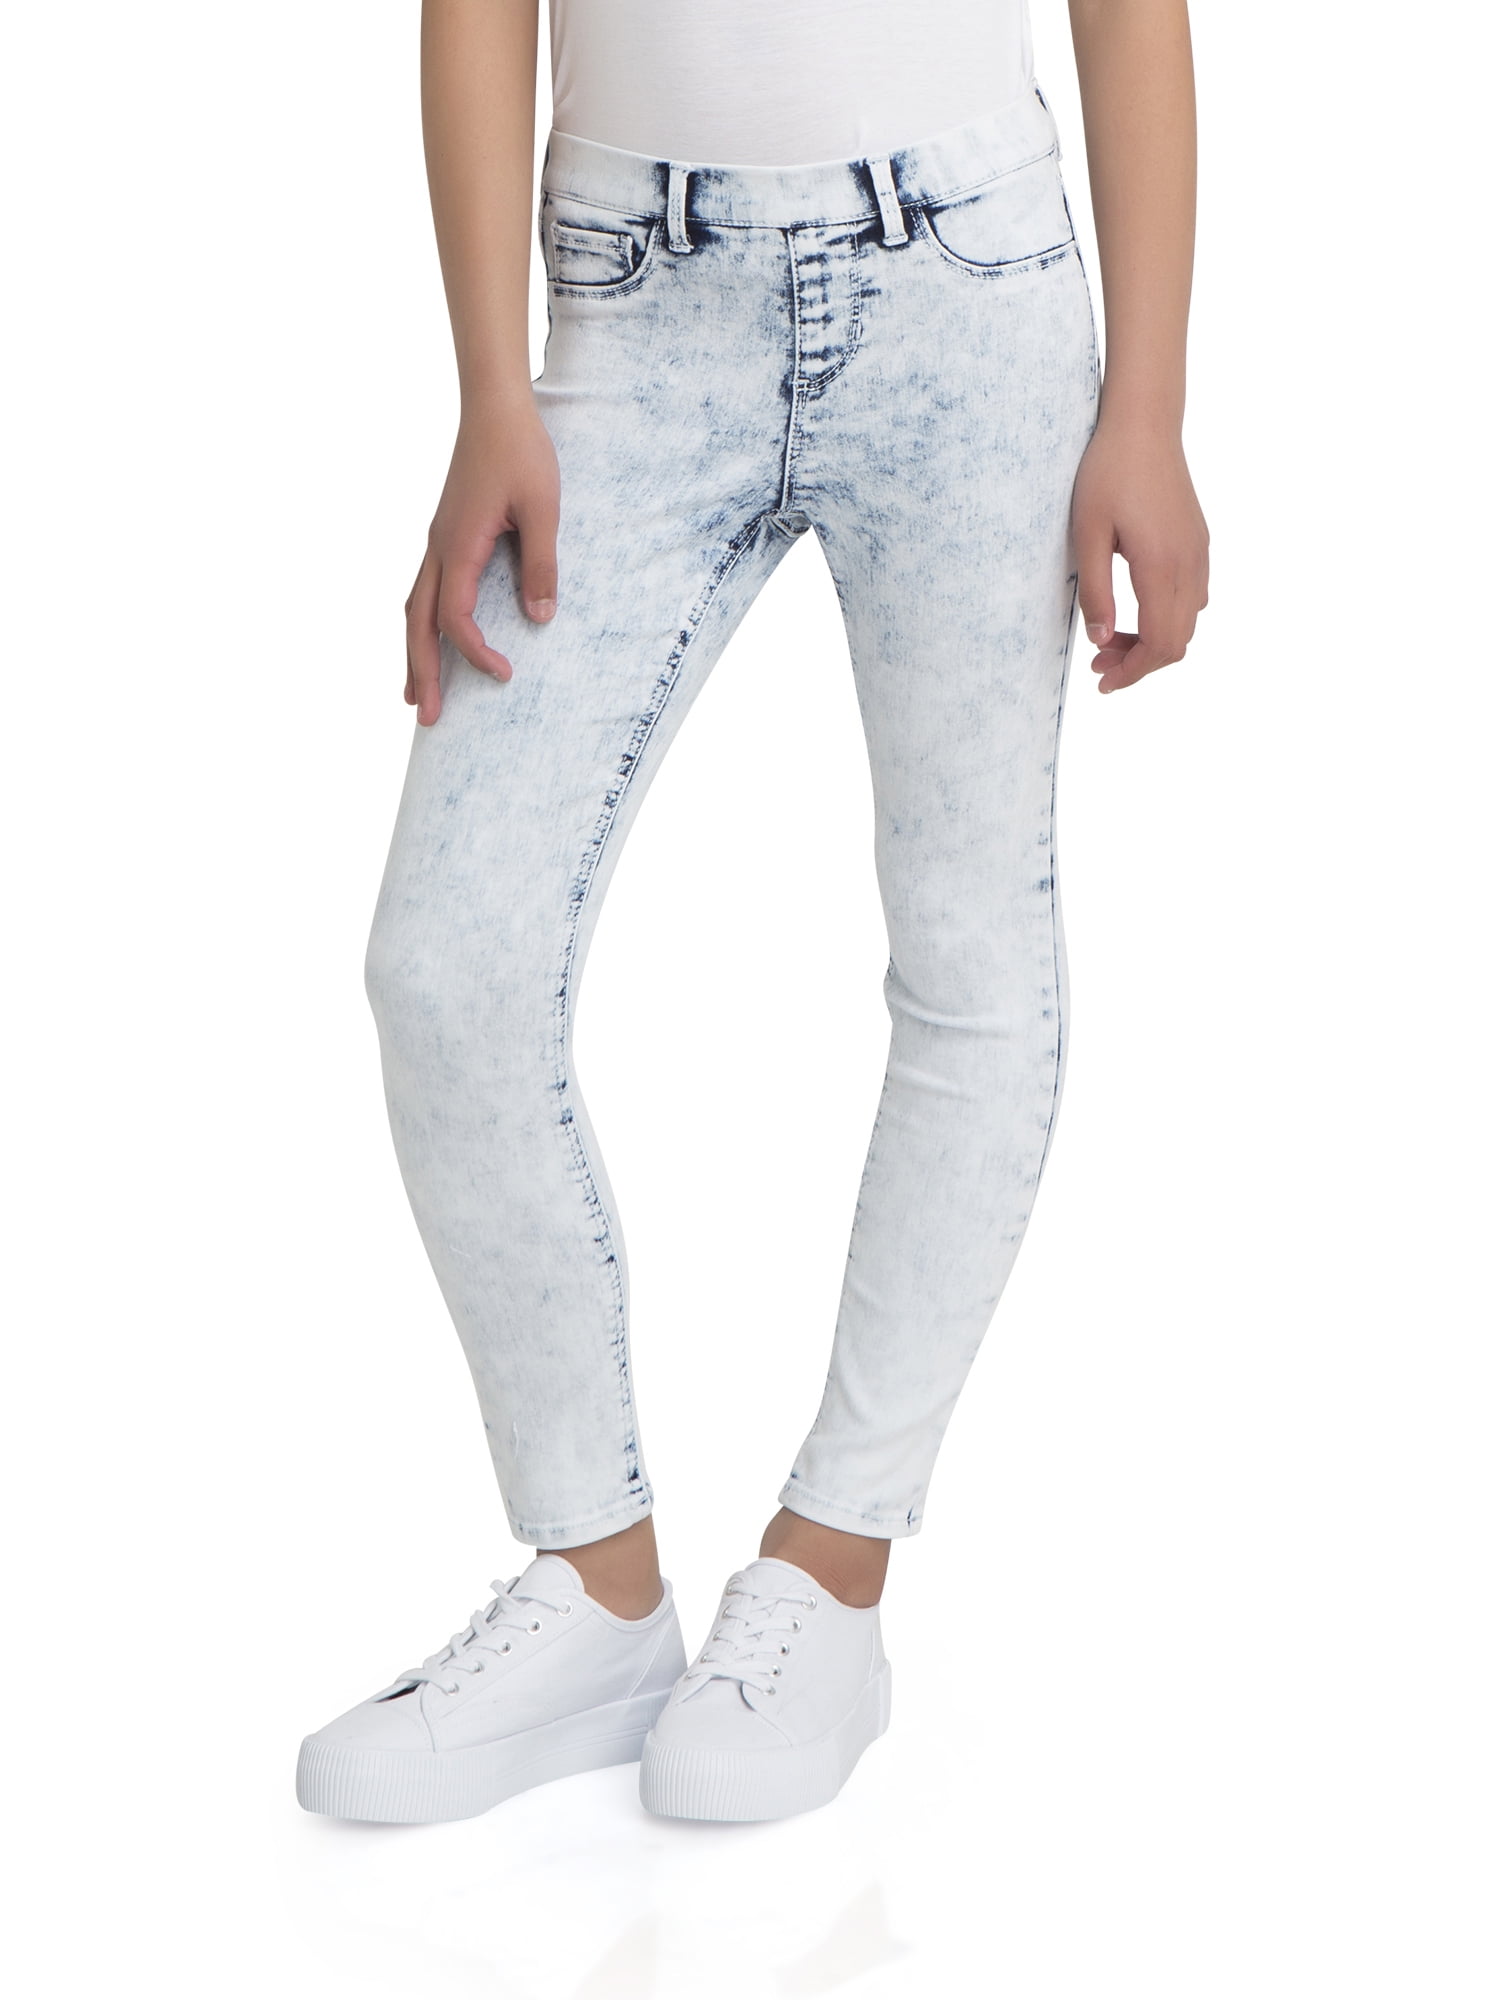 wrangler jeans sizes